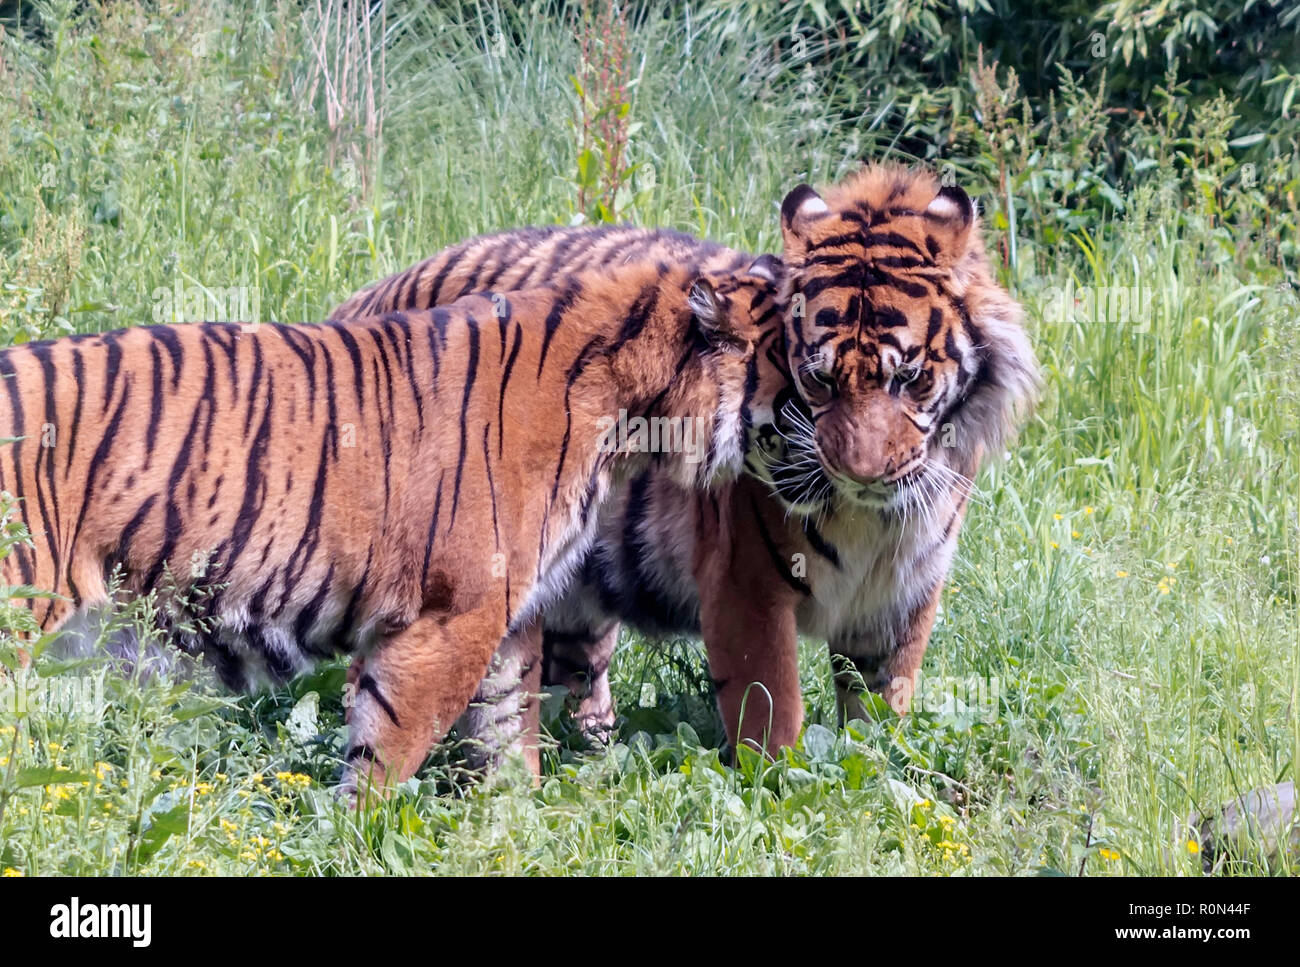 Tigresa de Sumatra (Panthera tigris sondaica) snuggling hasta tigre macho. Foto de stock